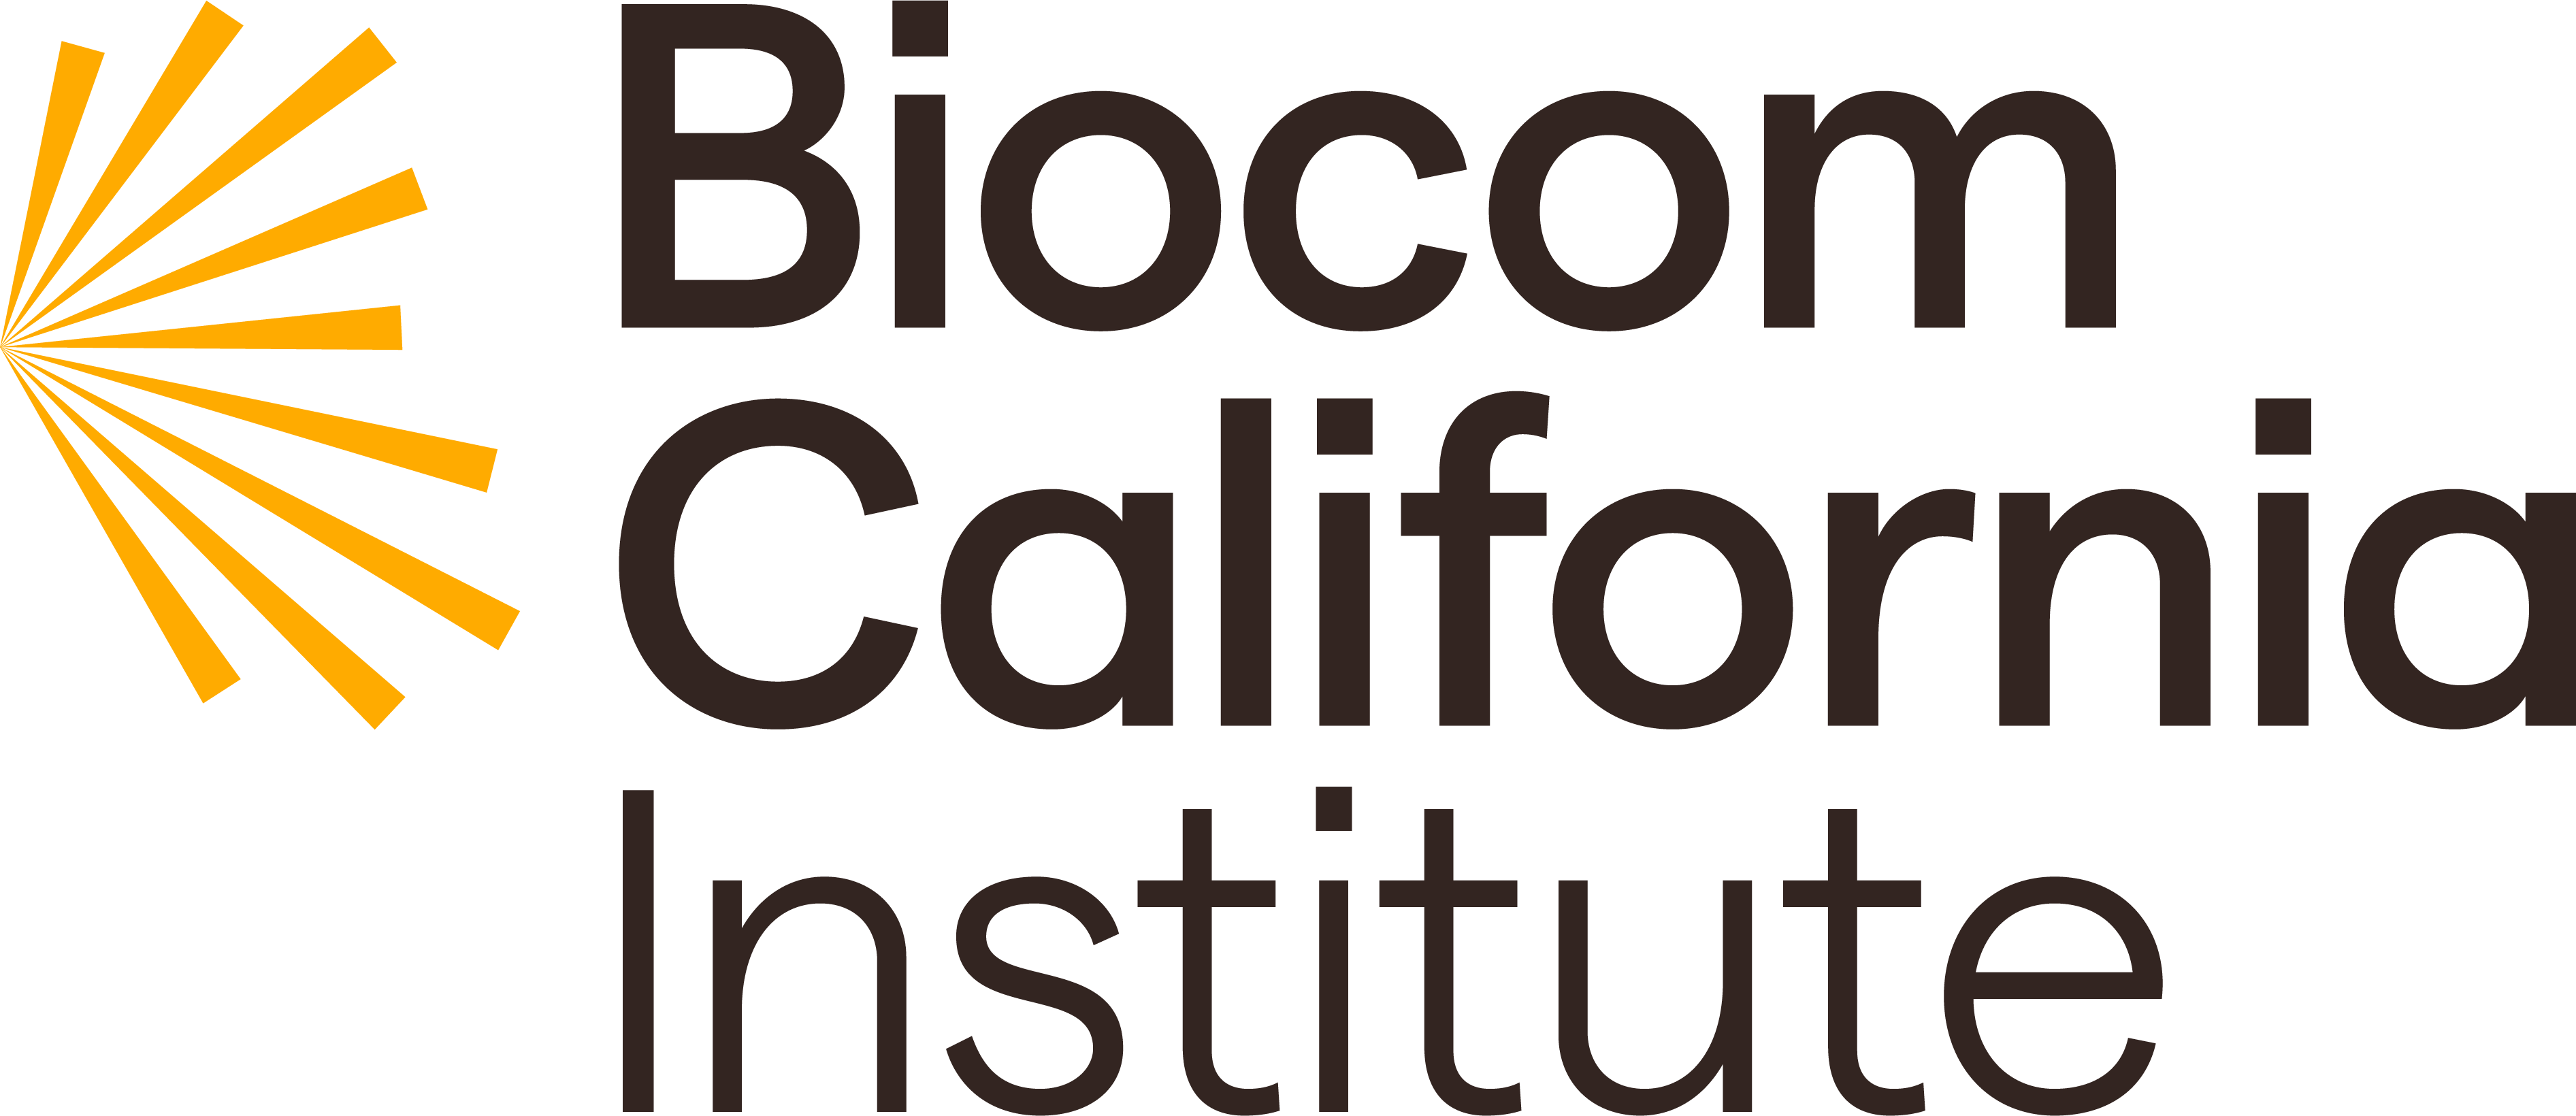 Biocom California Institute logo